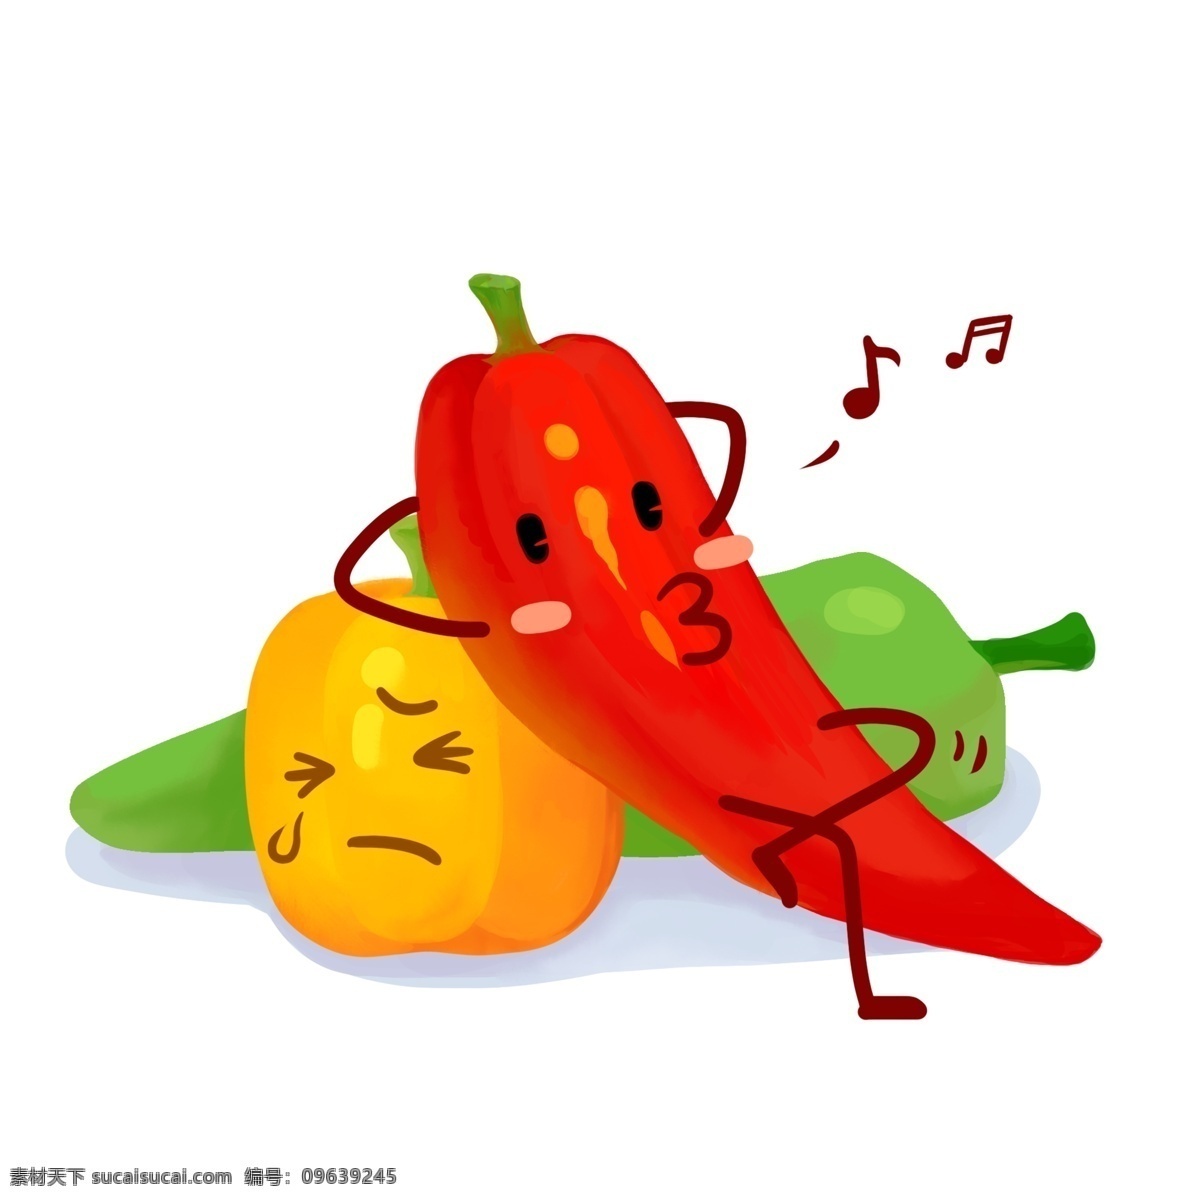 辣椒 青椒 蔬菜 果实 立秋 秋分 收获 丰收 植物 卡通 秋天 表情 蔬果 可爱卡通 拟人化 设计元素 元素